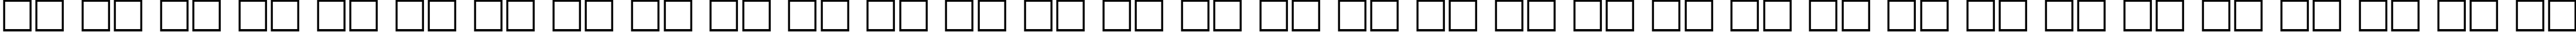 Пример написания русского алфавита шрифтом CompactCTT Italic